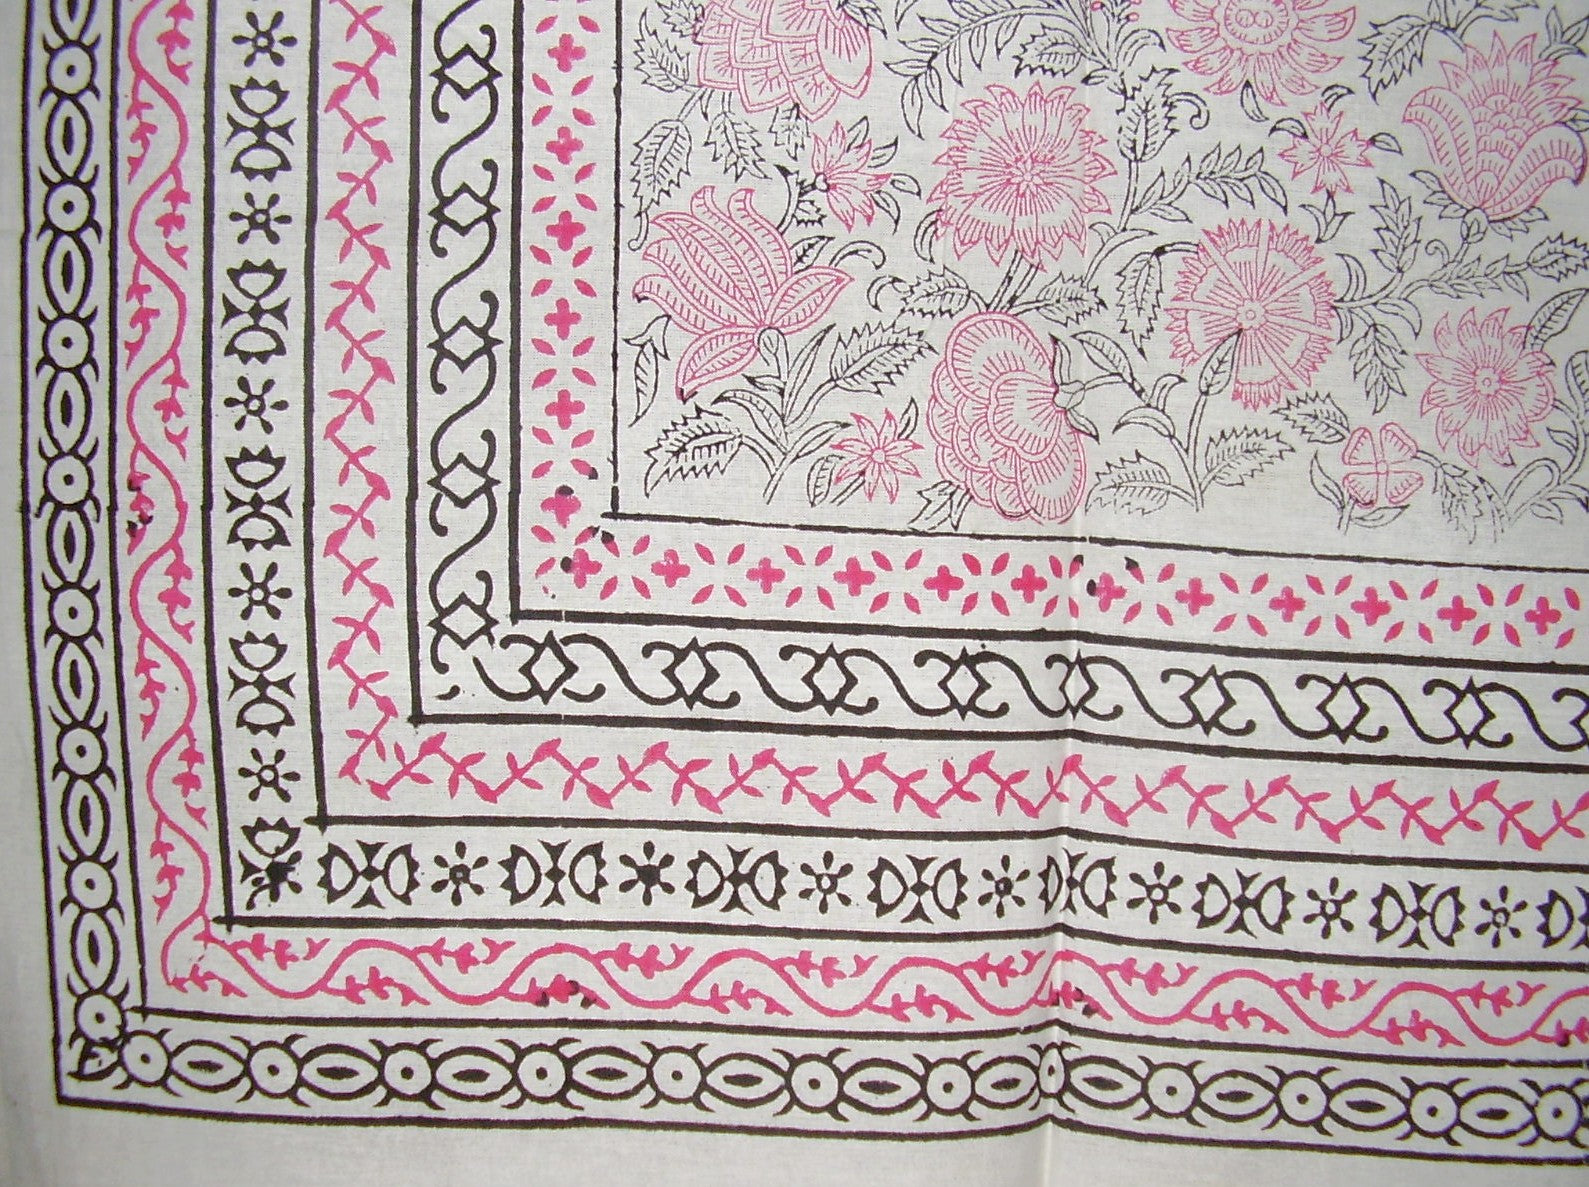 꽃무늬 블록 프린트 태피스트리 면 침대보 106" x 70" 트윈 핑크